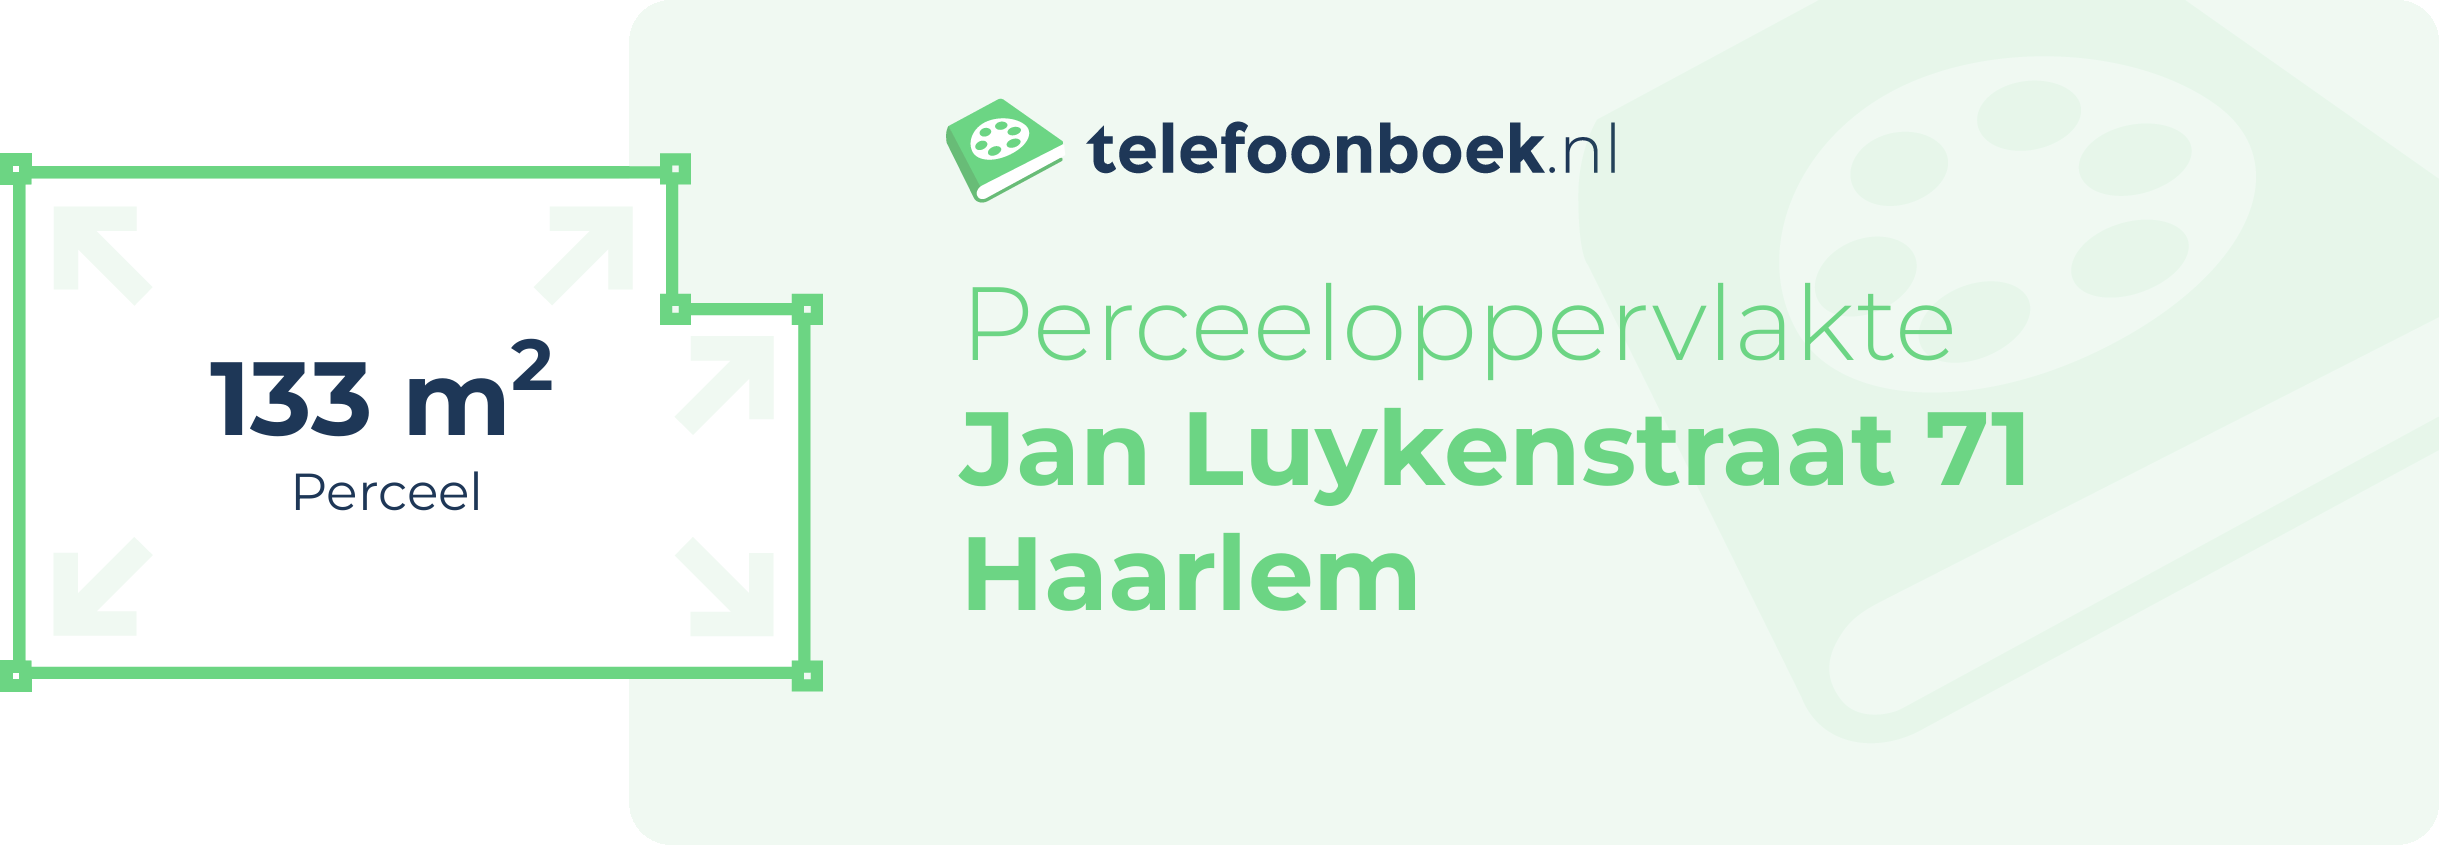 Perceeloppervlakte Jan Luykenstraat 71 Haarlem